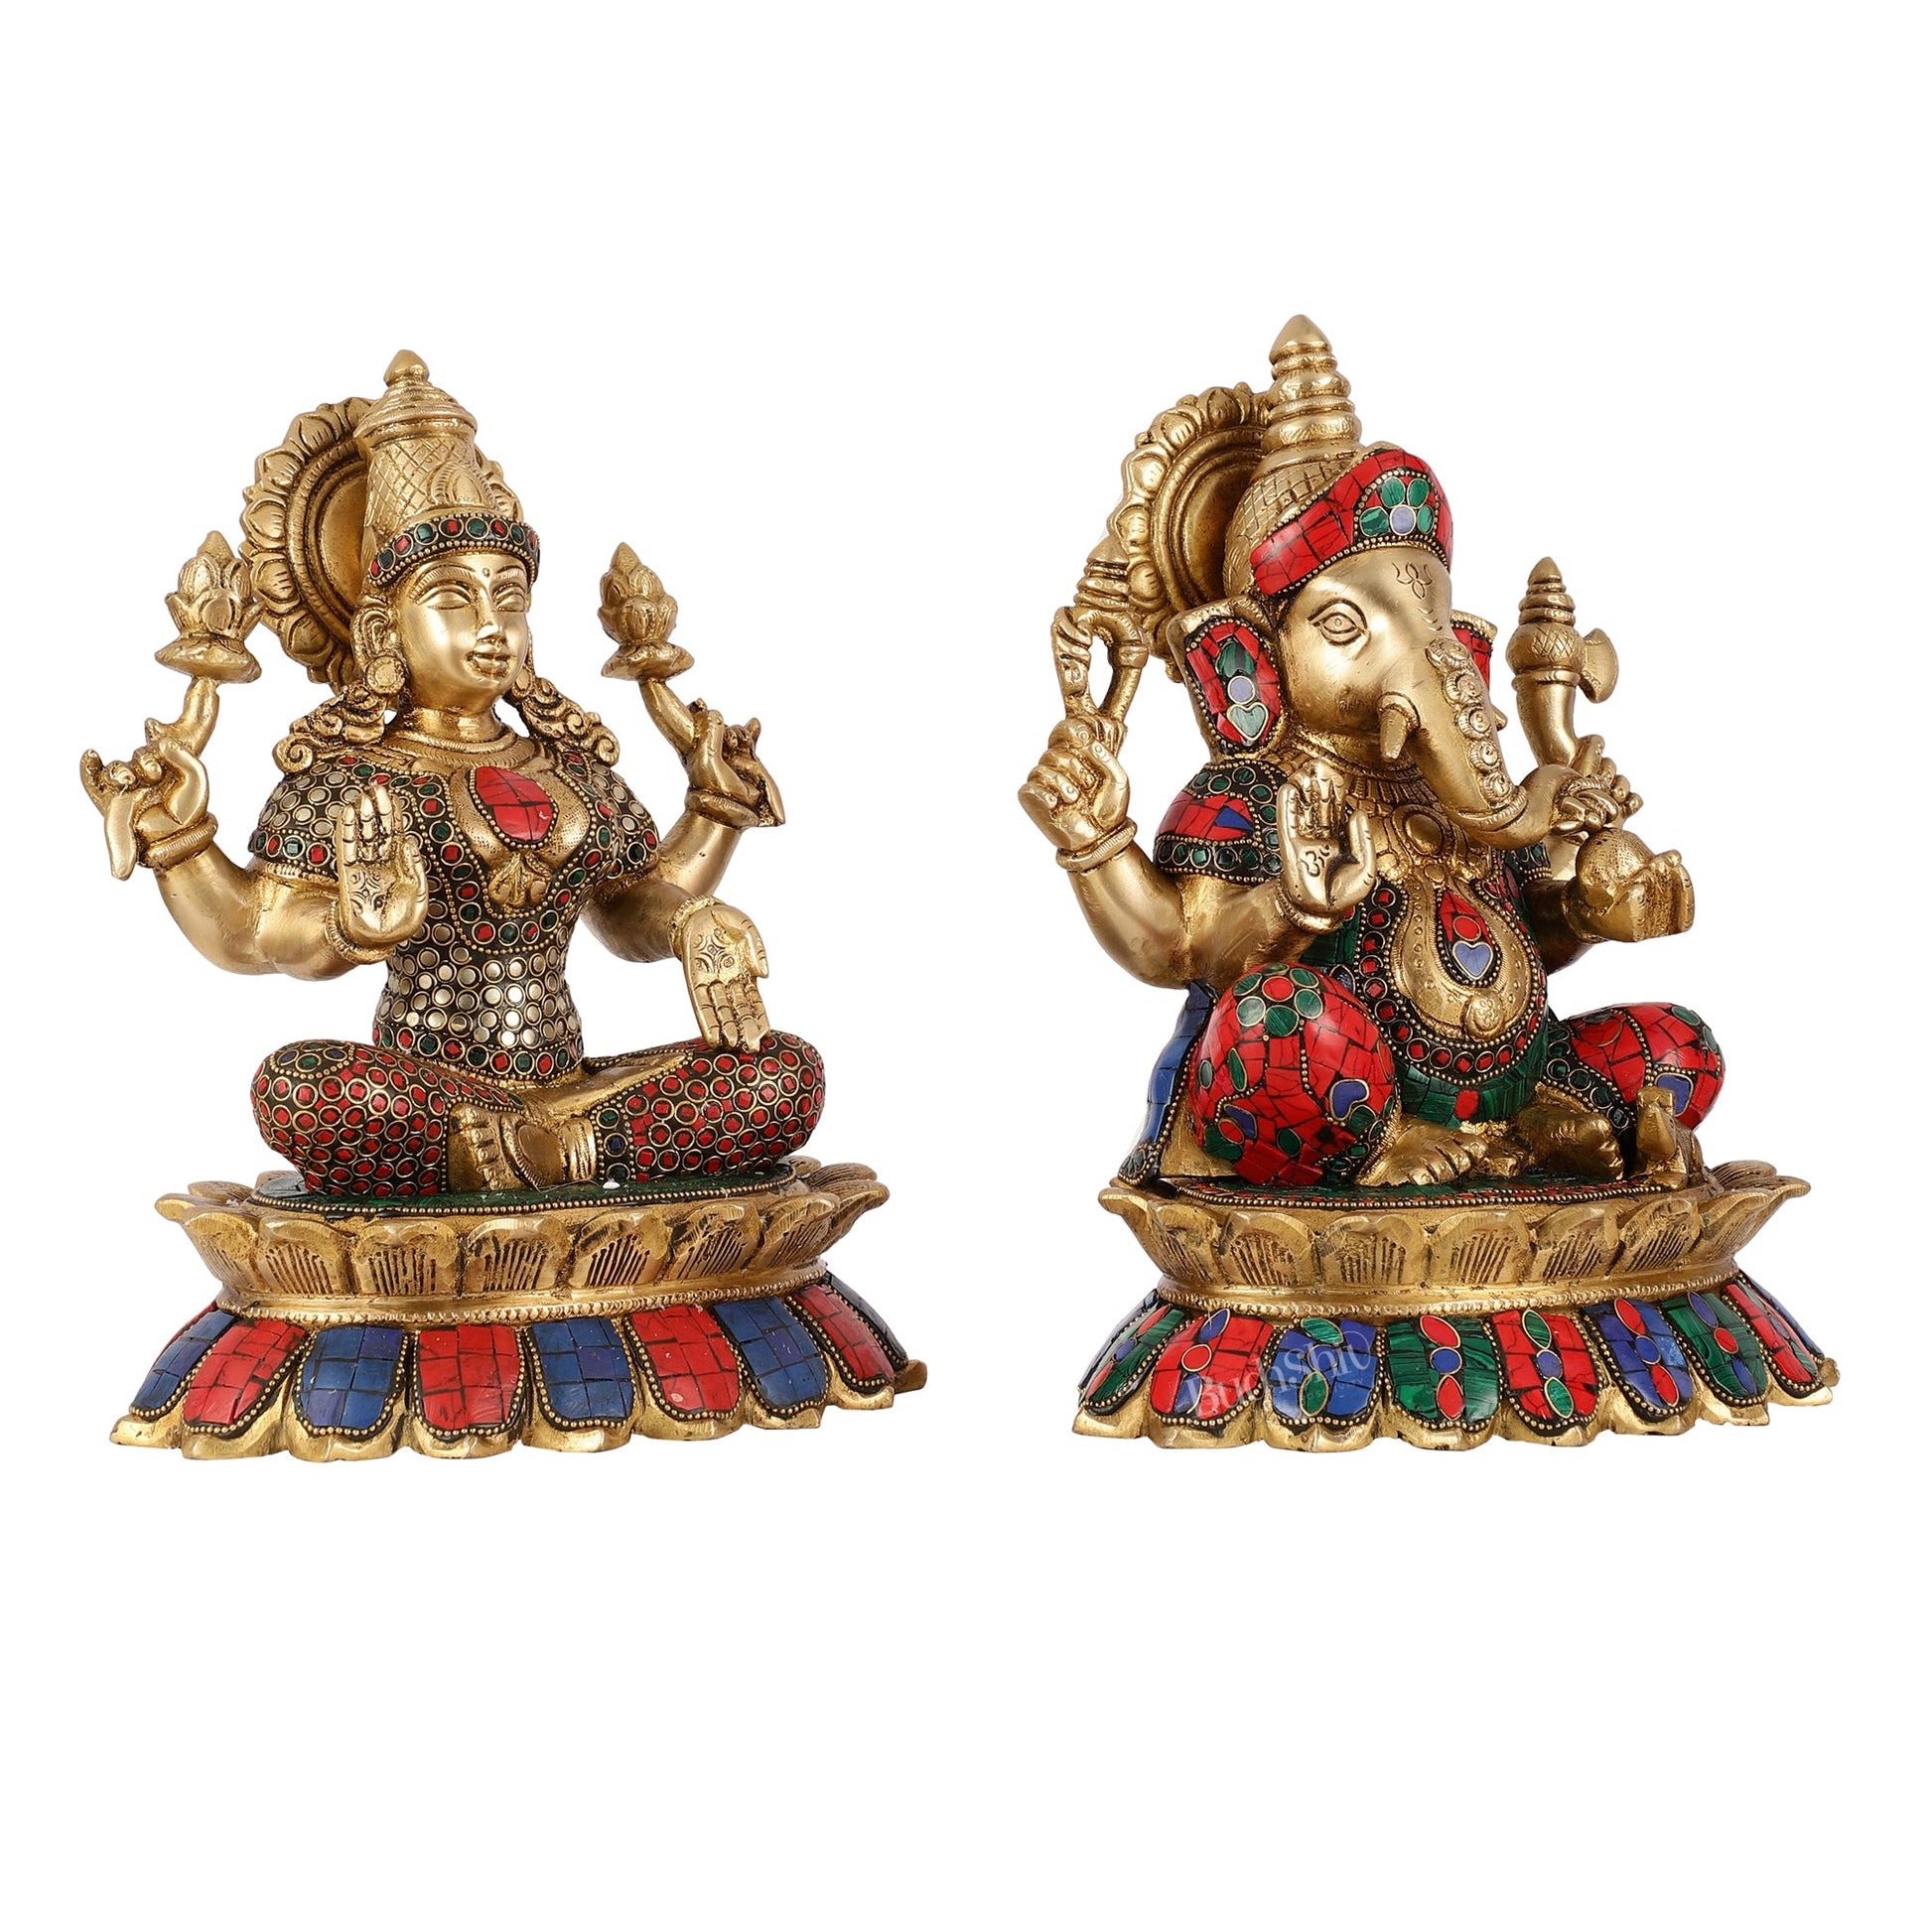 Brass Divine Pair: Ganesha and Lakshmi idols on Lotus - 11 Inch - Budhshiv.com